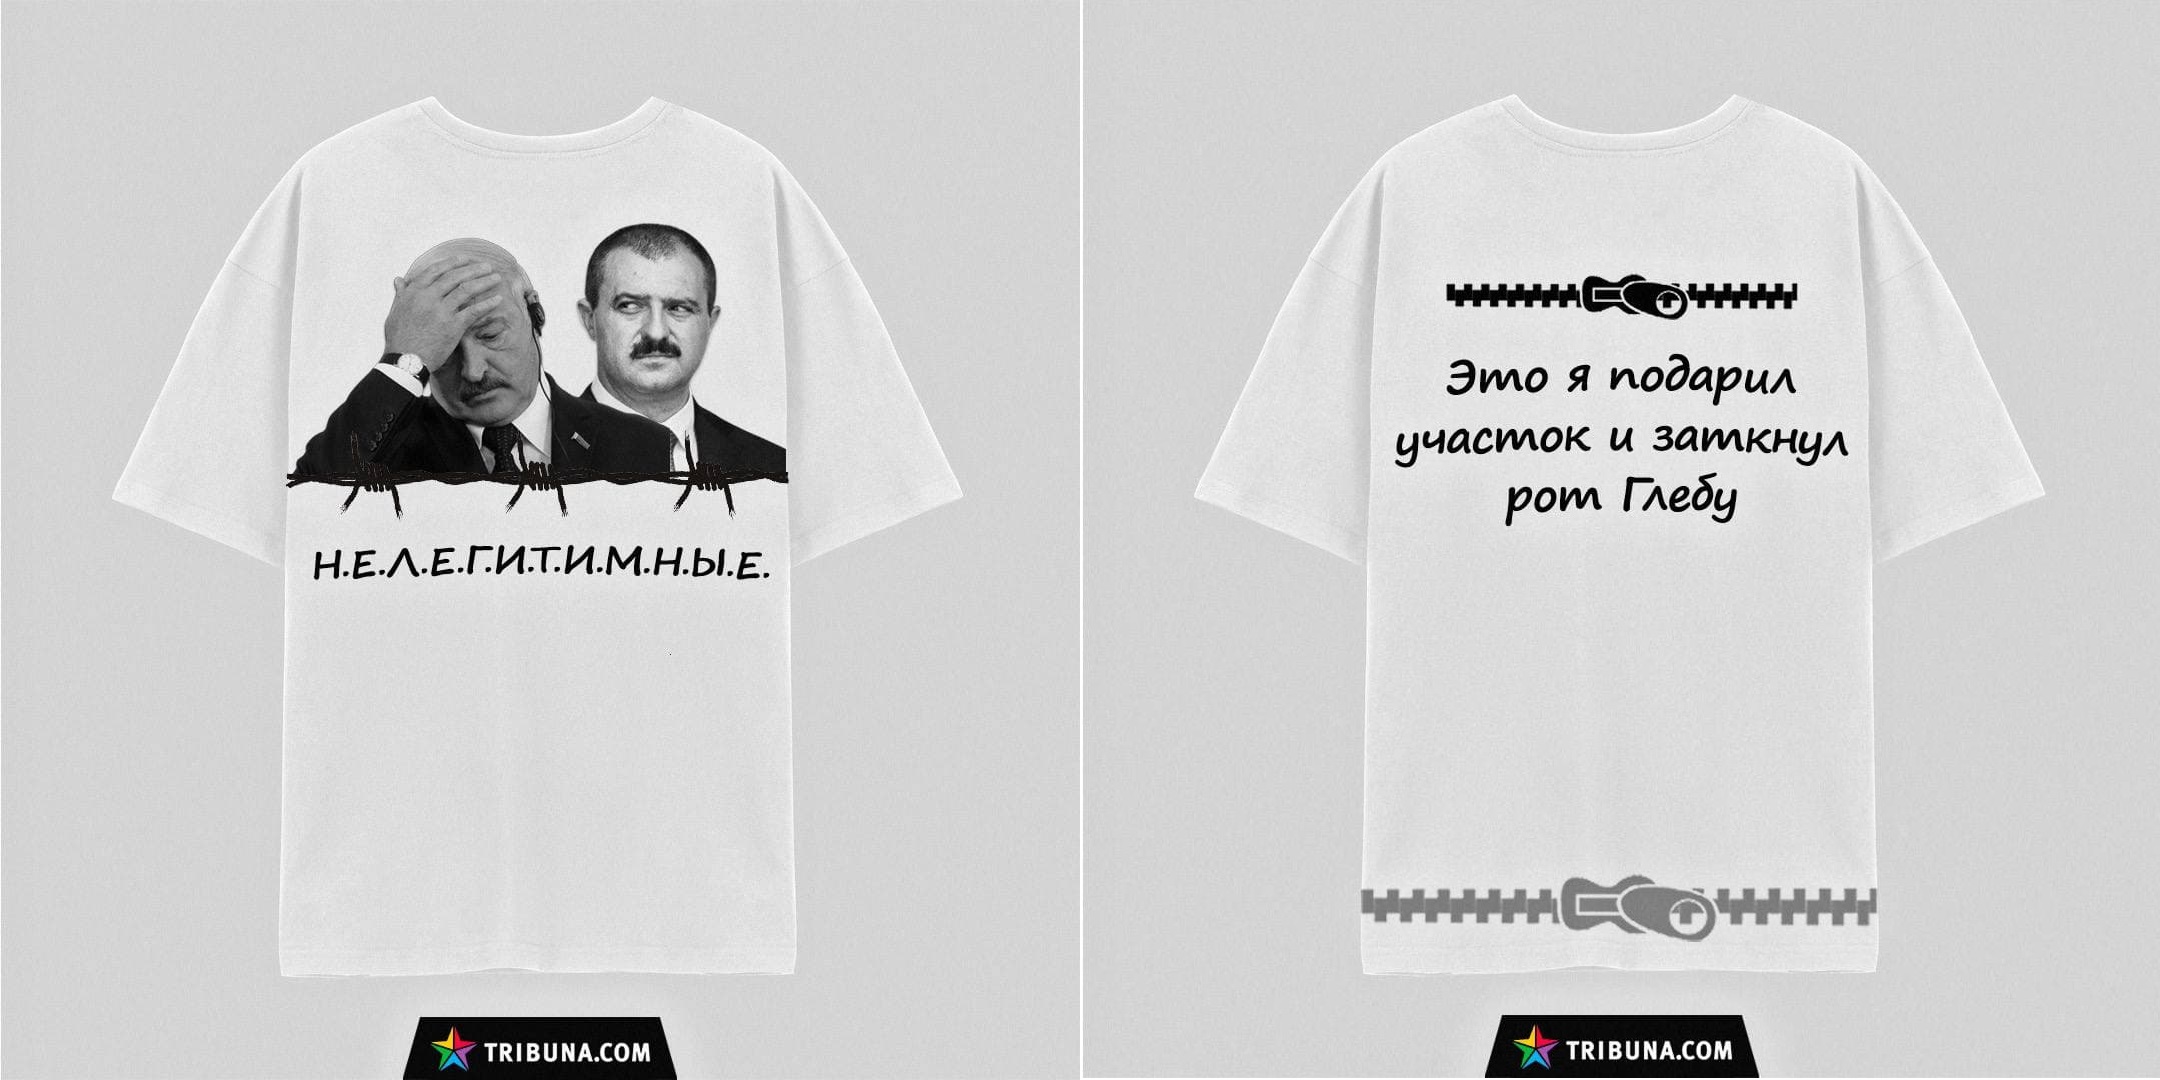 "Ворую голоса с 1996": интернет откликнулся на выпуск маек с цитатами Лукашенко